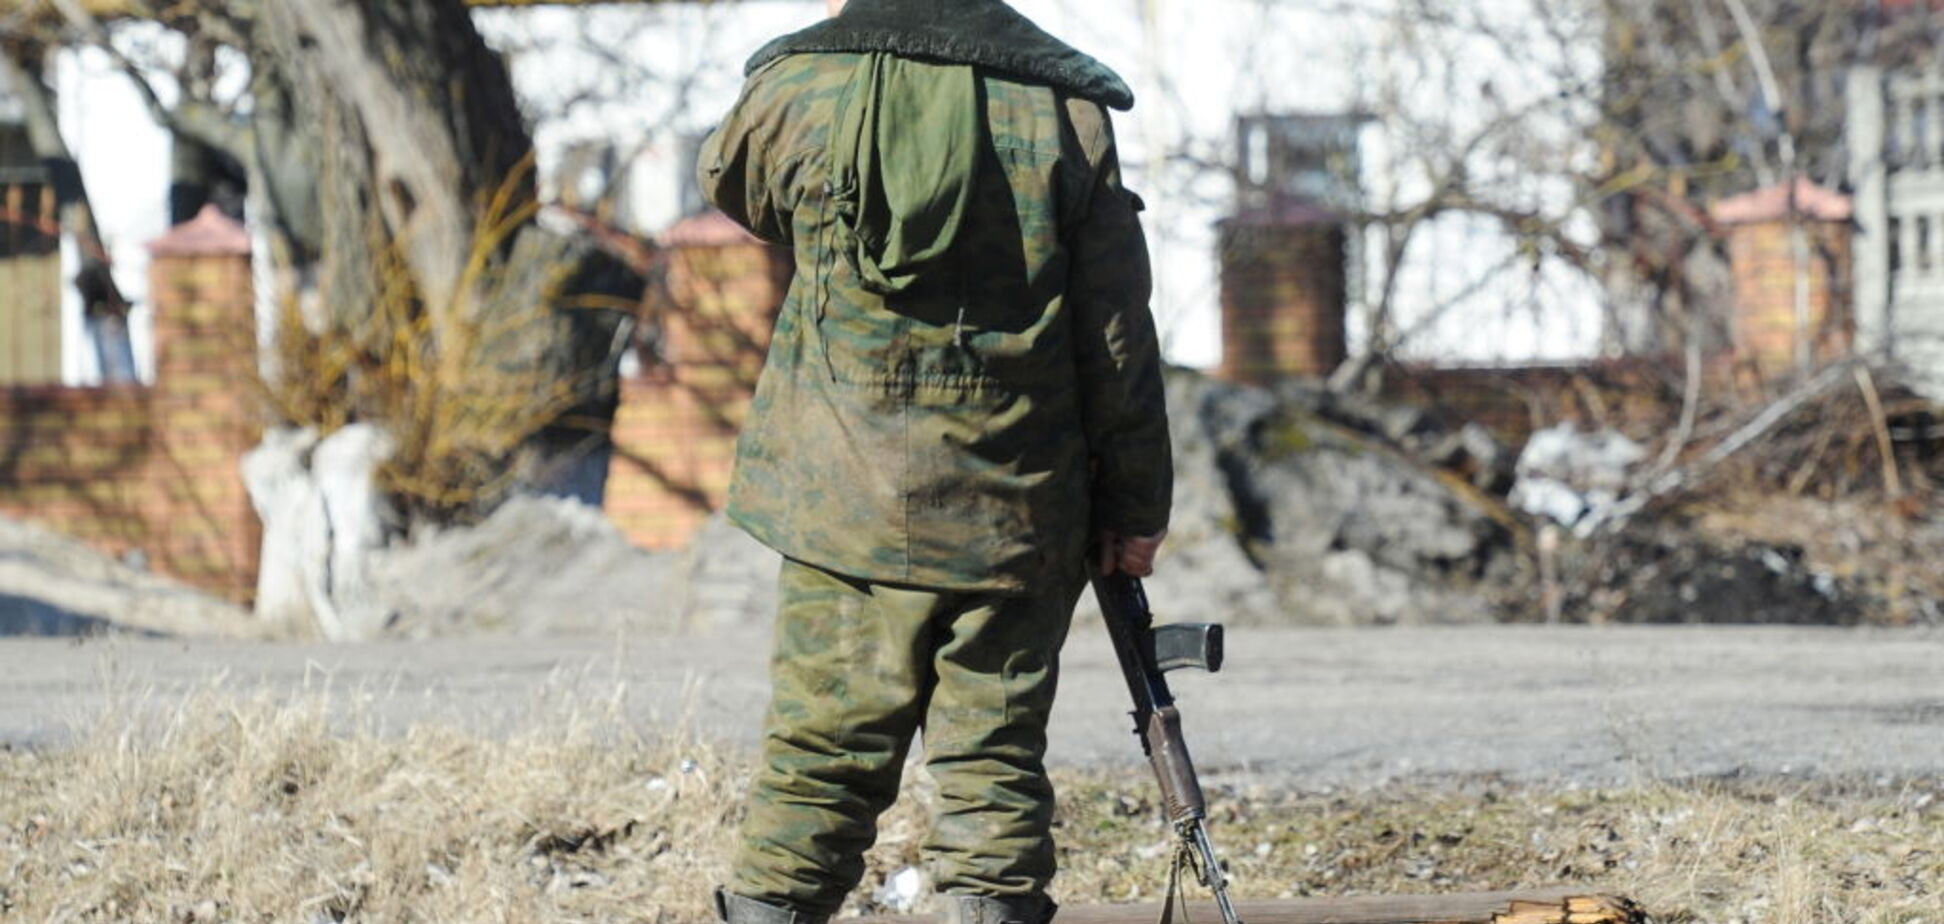 35 поранених, 17 убитих: стало відомо про масштабні втрати 'Л/ДНР'